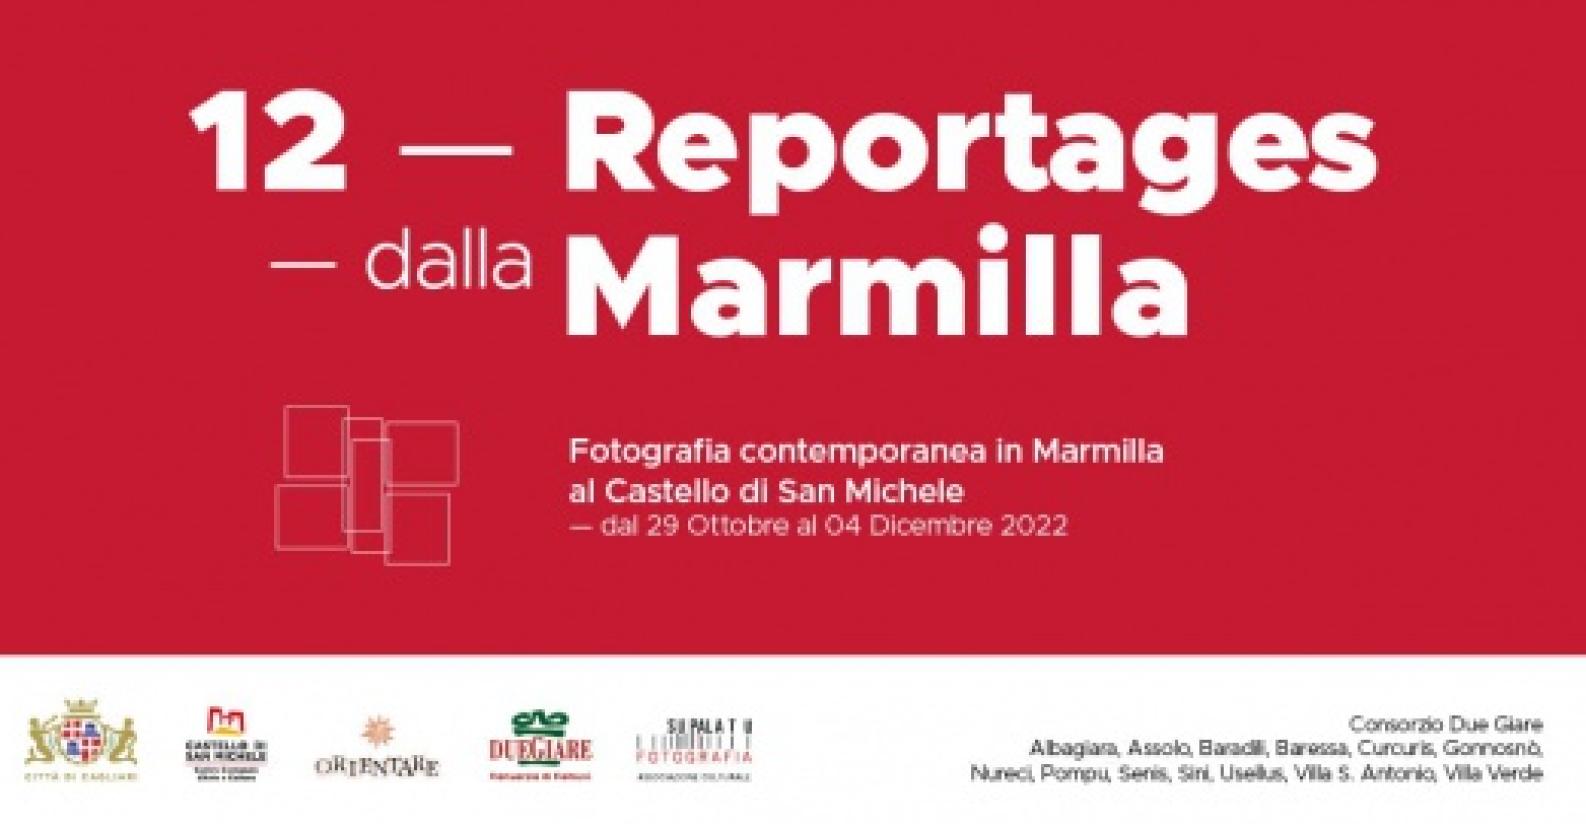 12_reportages_marmilla